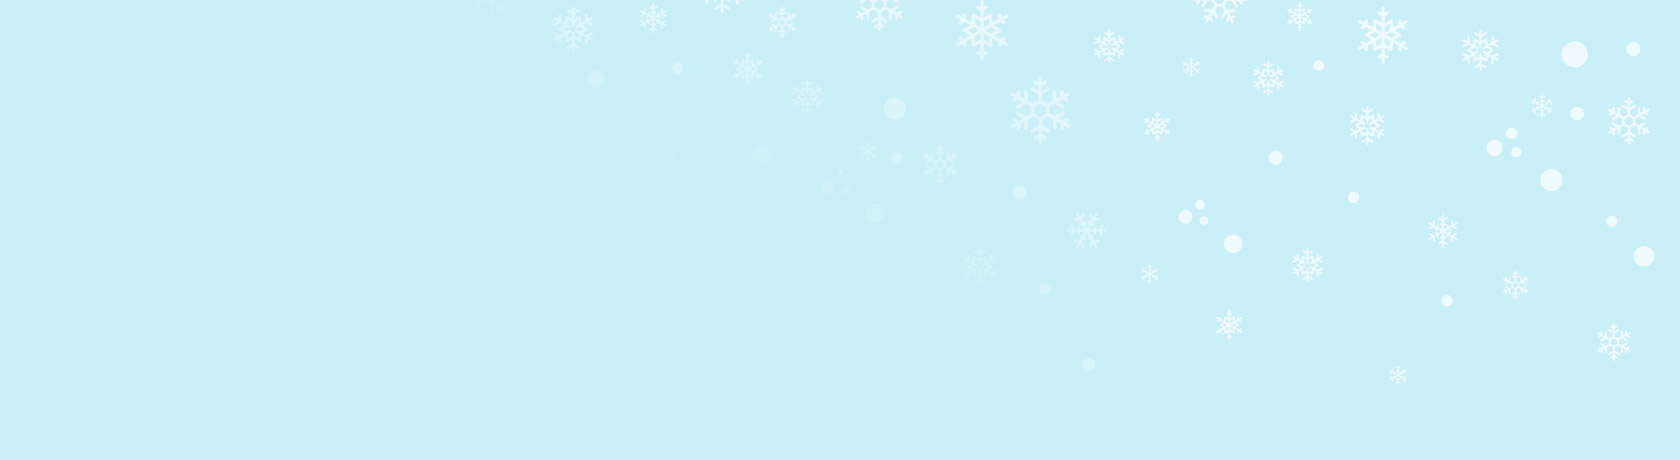 Weihnachtsbaumkugel mit blauem Hintergrund